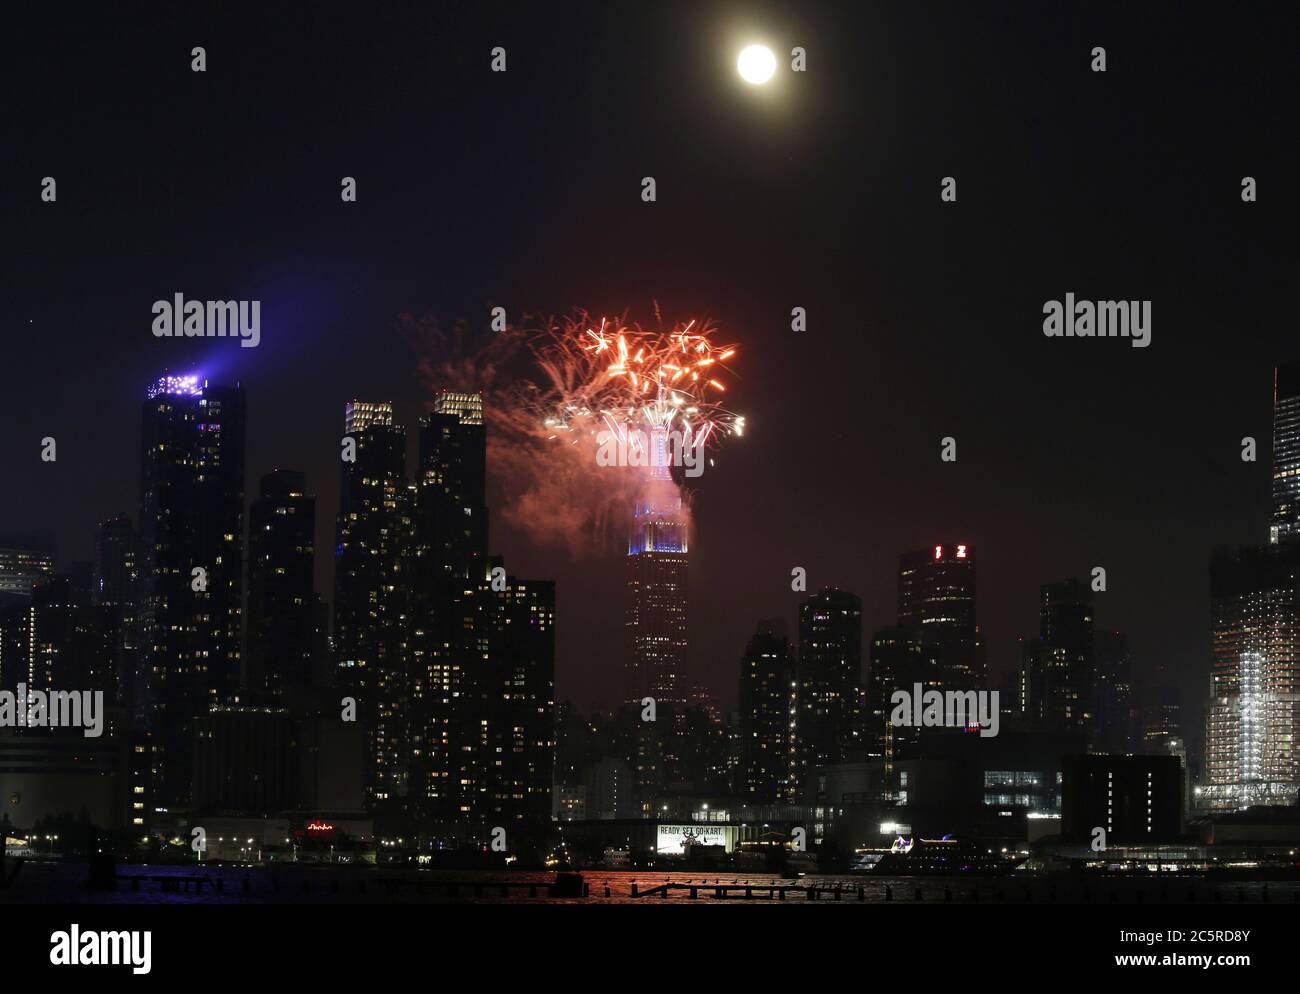 Weehawken, Usa. Juli 2020. Freworks beleuchten das Empire State Building und die Skyline von Manhattan für die jährliche Macy's Feuerwerksshow am 4. Juli am Unabhängigkeitstag am Samstag, 4. Juli 2020 in Weehawken, New Jersey. Macy's hat das letzte von mehreren kleinen, unangekündigten Feuerwerken für den Feiertag des 4. Juli angezündet. New York City bereitet sich auf den Eintritt in Phase 3 eines vierteiligen Wiedereröffnungsplans am 6. Juli vor, nachdem er wegen COVID-19 für fast 4 Monate geschlossen wurde. Foto von John Angelillo/UPI Kredit: UPI/Alamy Live Nachrichten Stockfoto